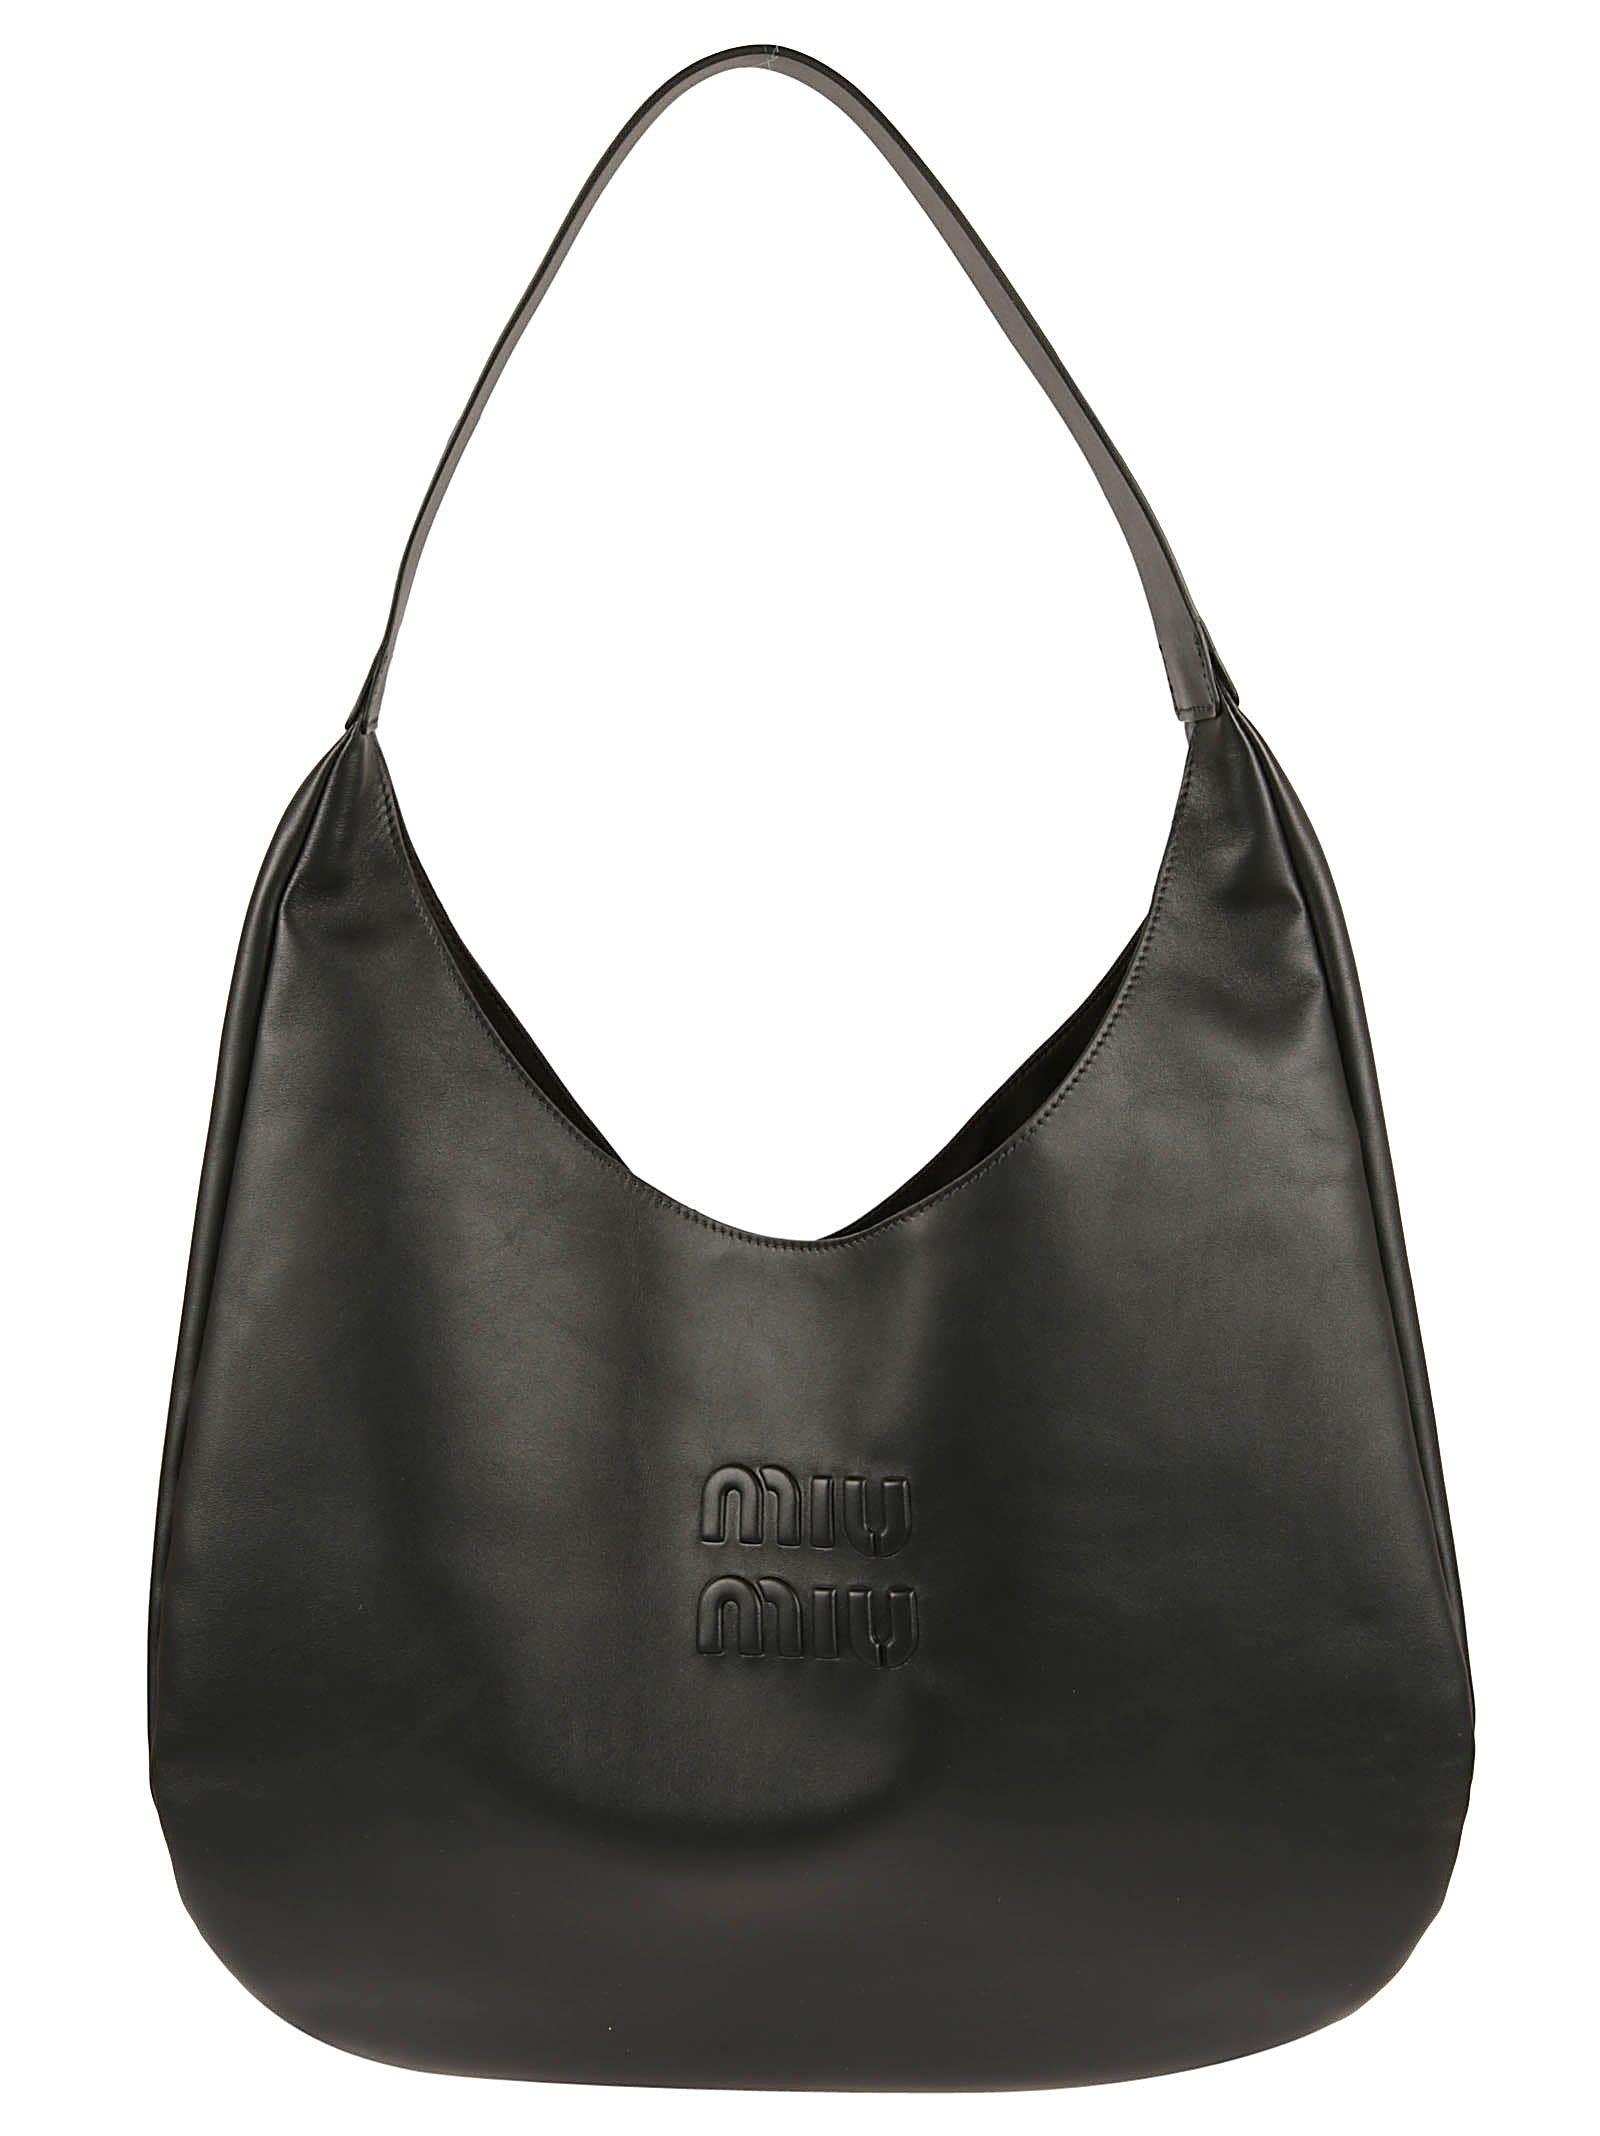 Miu Miu Women's Leather Shoulder Bag